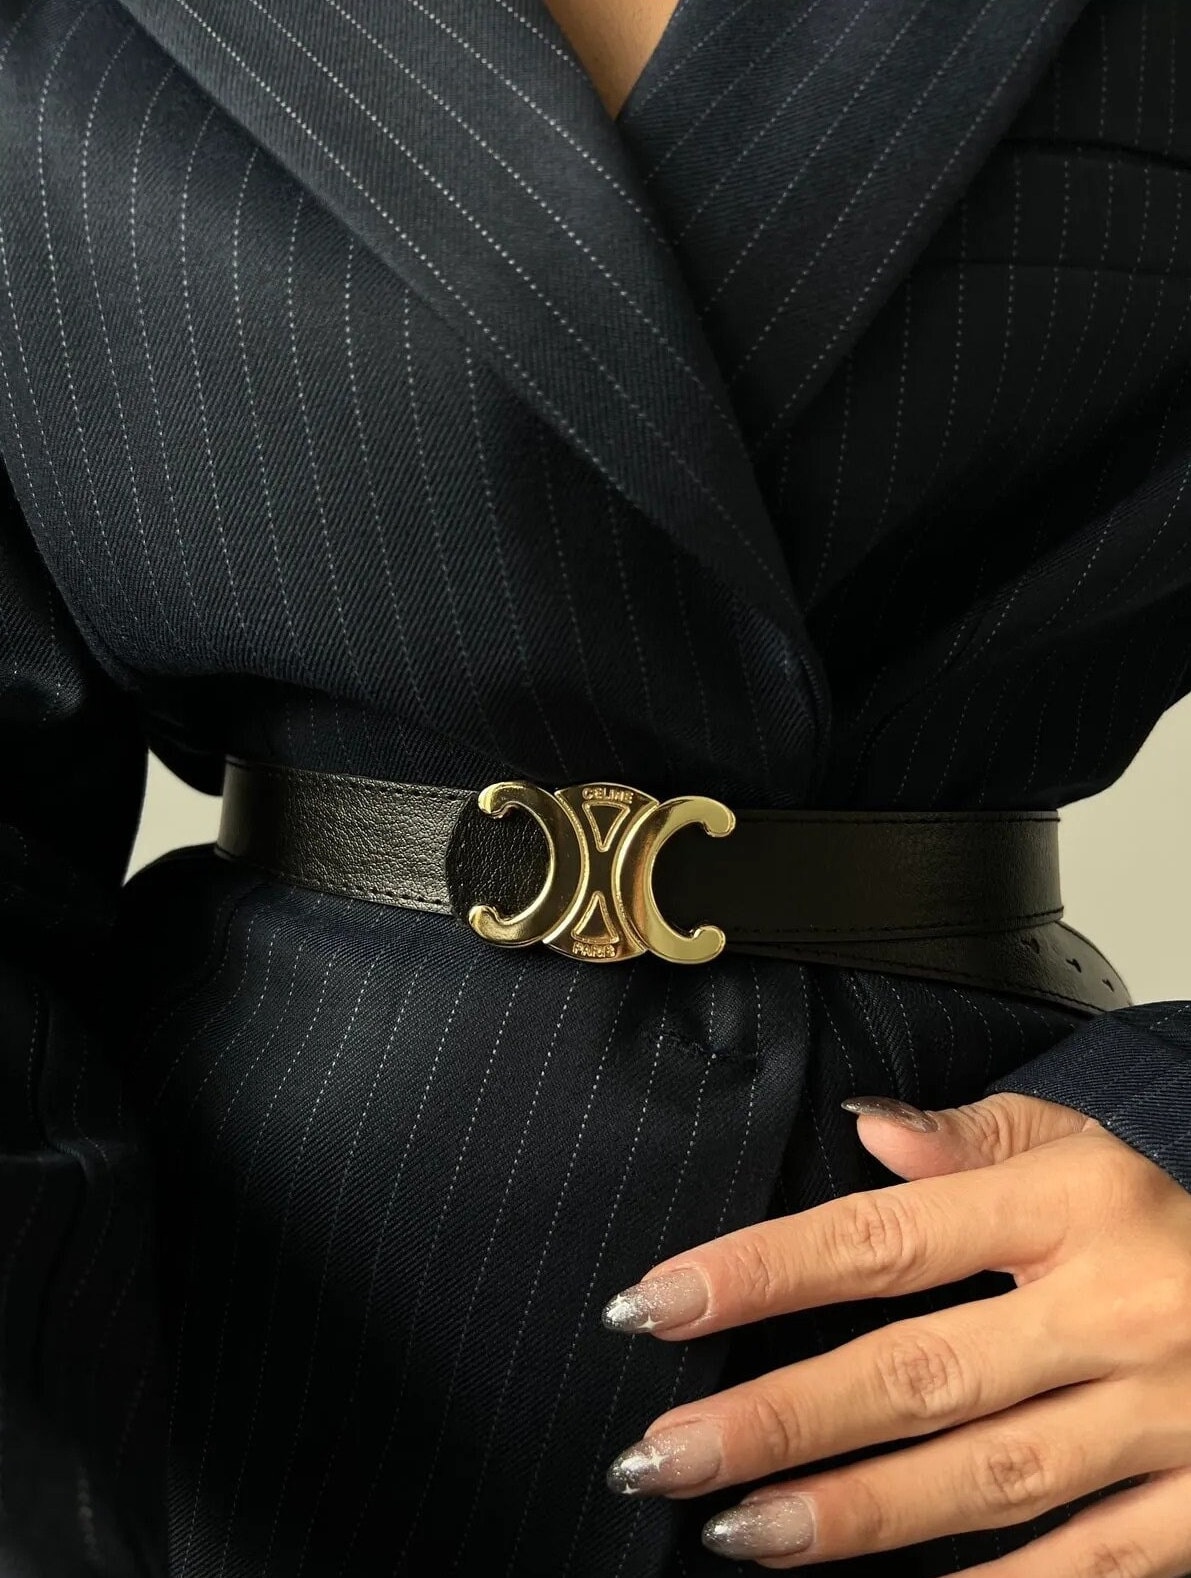 Lv Louis Vuitton Belt For Men Sier Buckle Black Leather Fashion Belt Pants  Jeans Shorts Dresses 3.8CM Belt Width Prices, Shop Deals Online